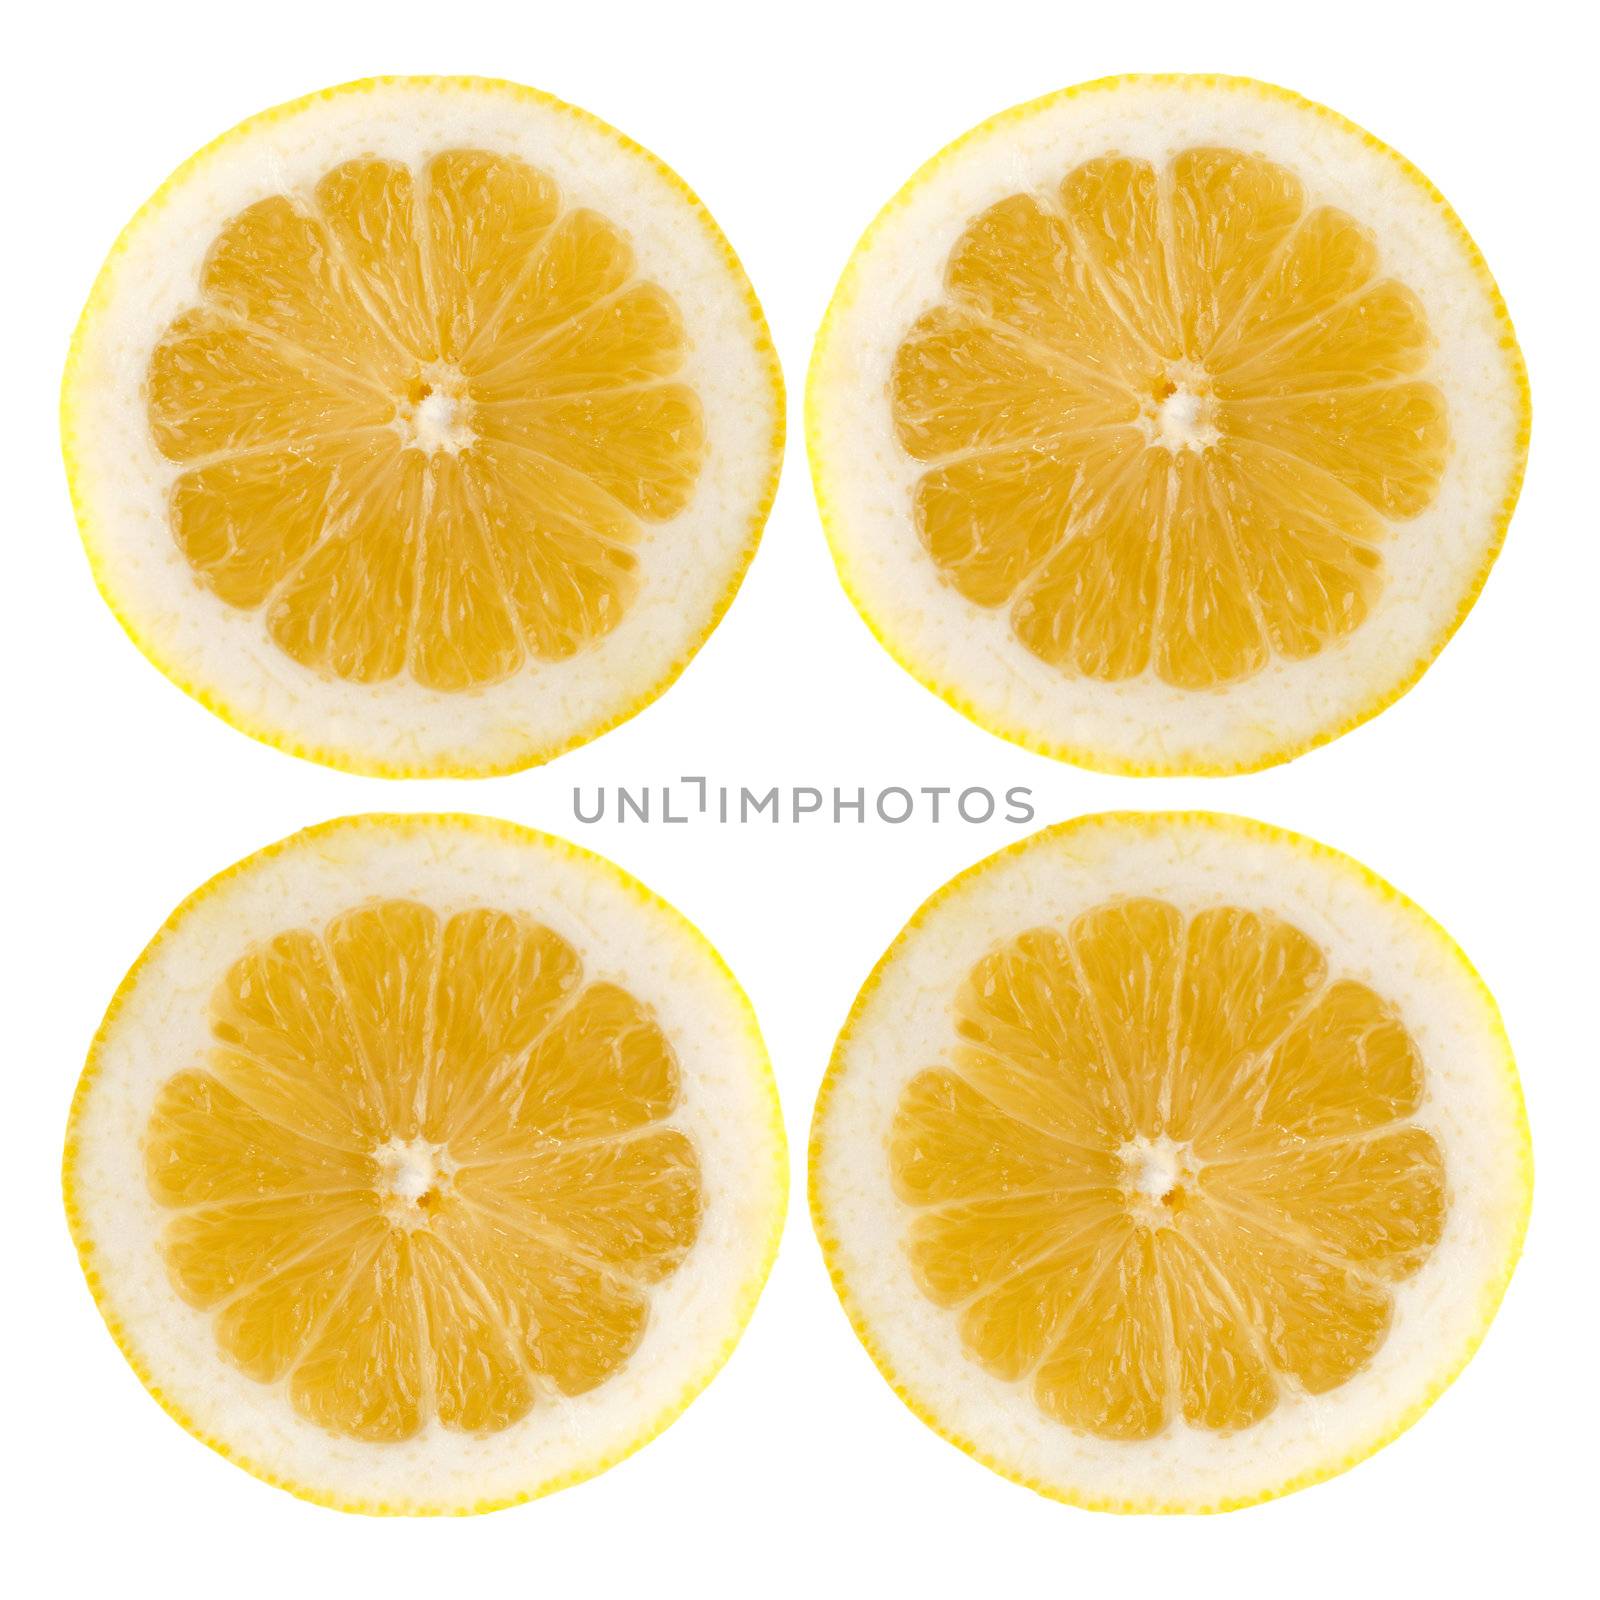 Four fresh lemon halves on white background.